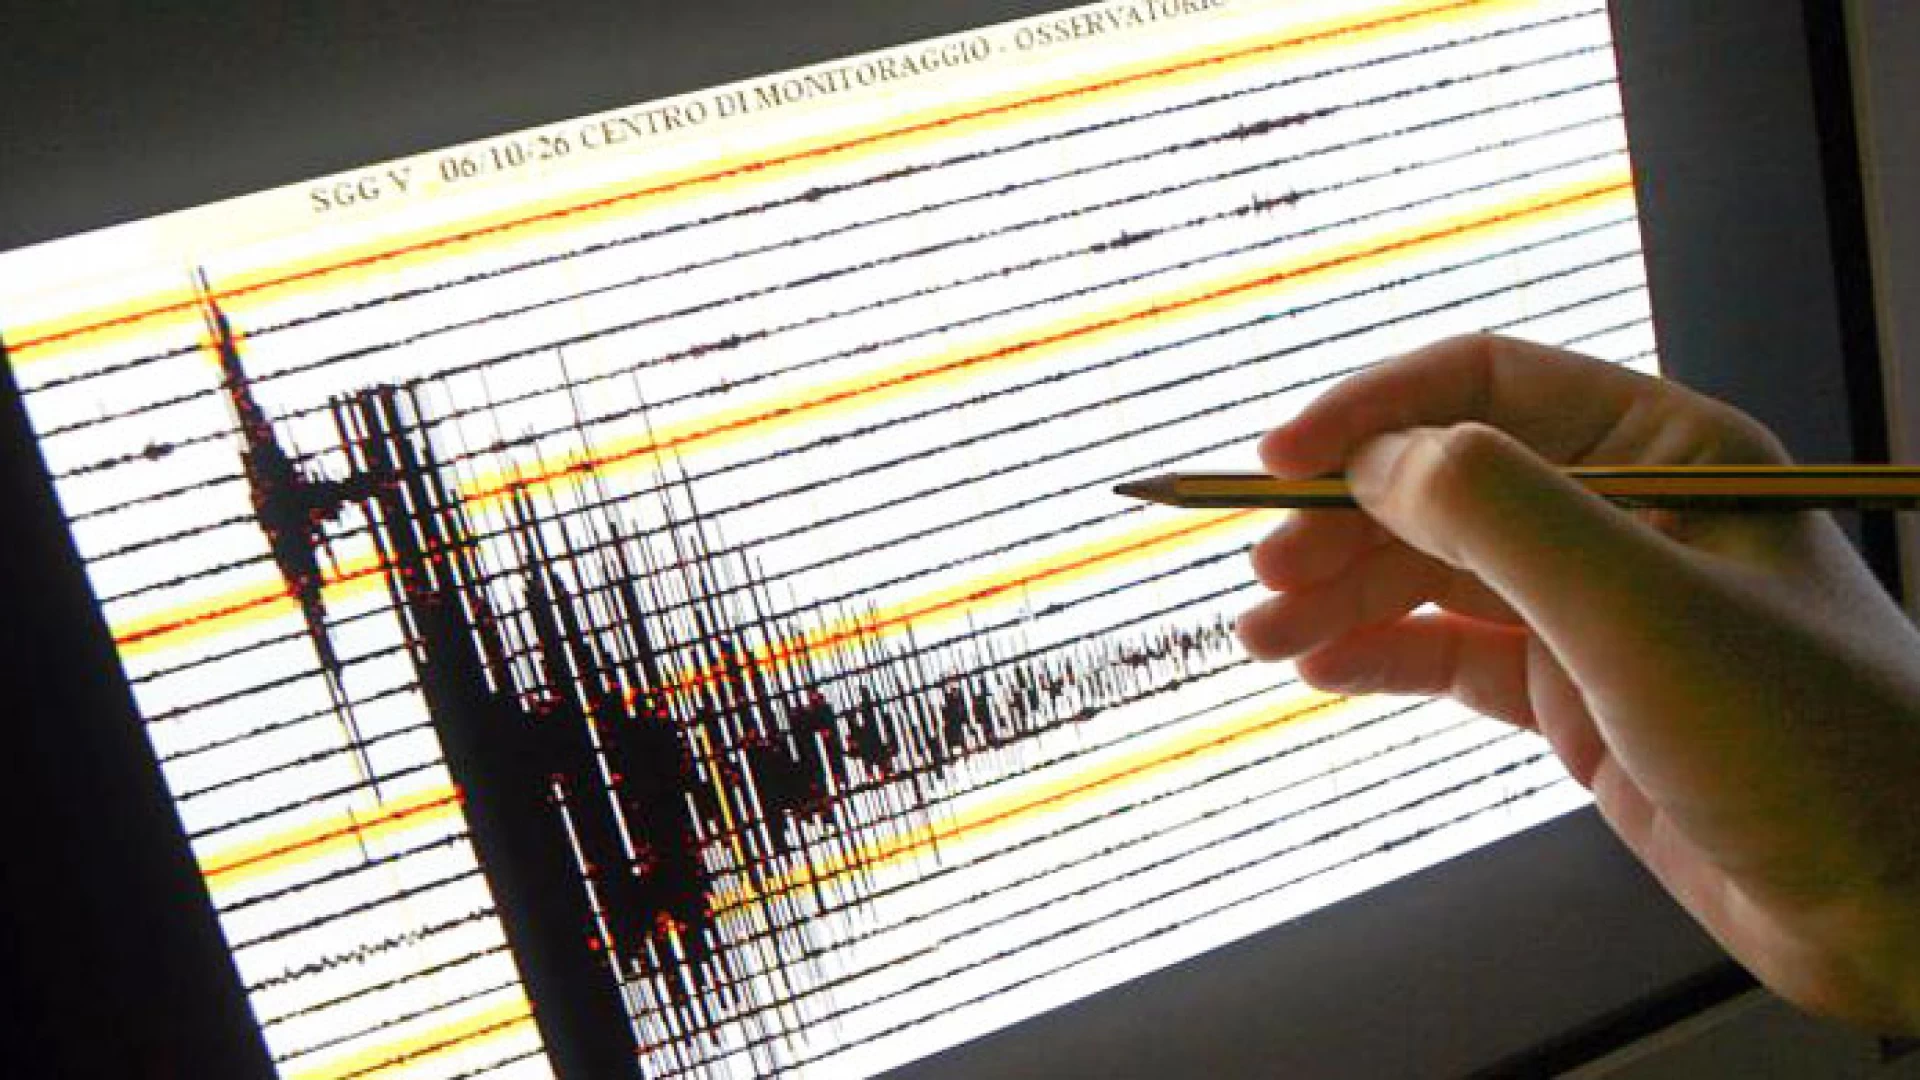 Trema la terra in Provincia di Isernia. Una scossa di magnitudo 2.4. registrata stamani in Alto Molise.